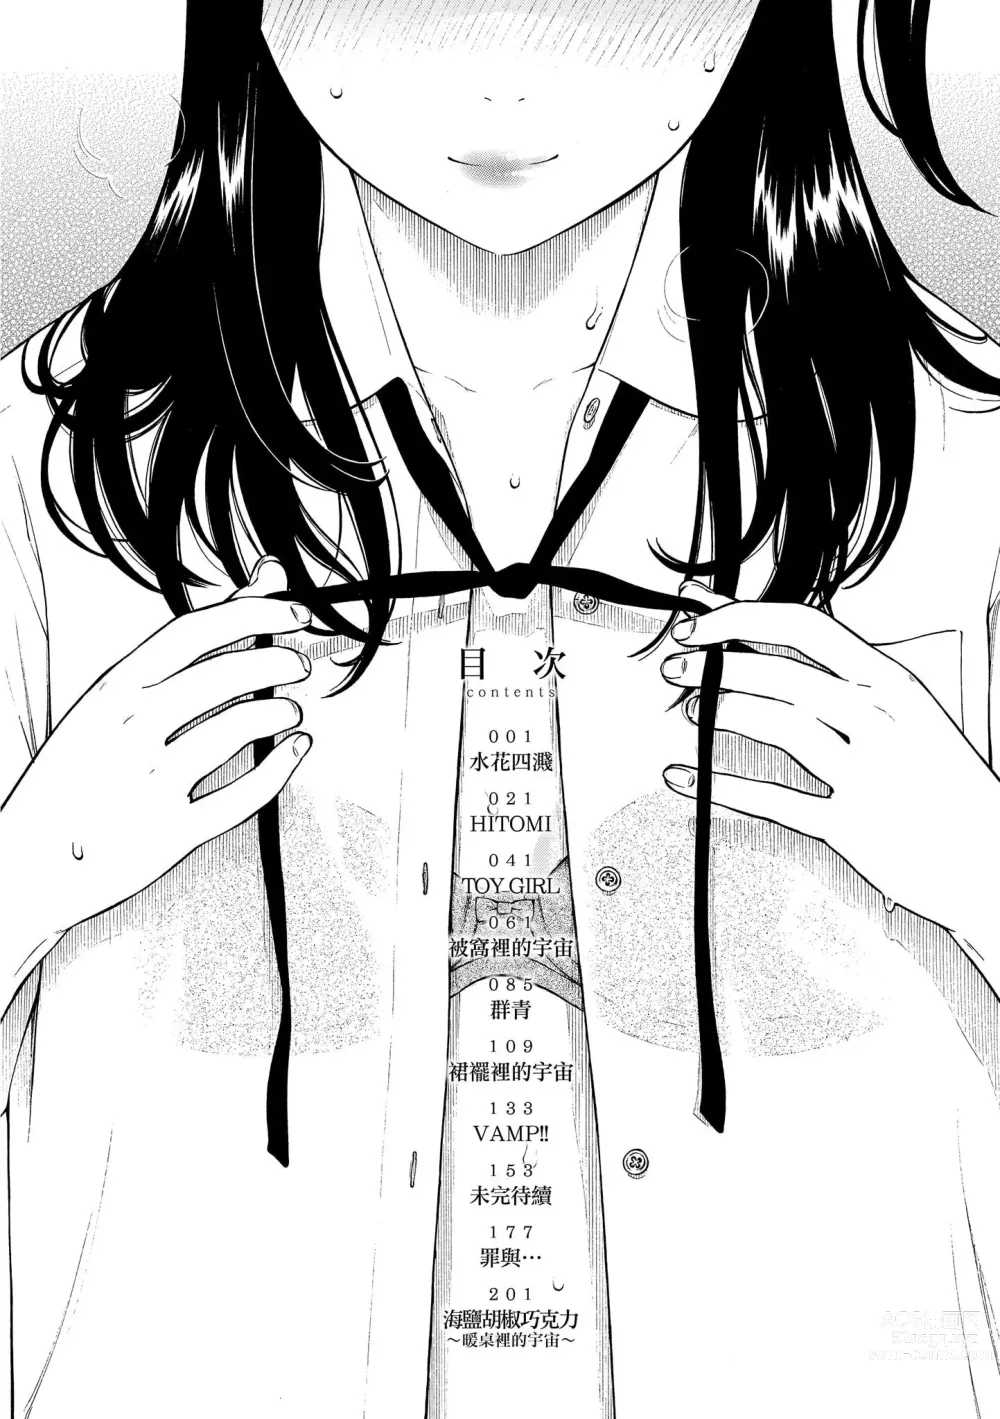 Page 5 of manga 放學後的香草女孩 (decensored)